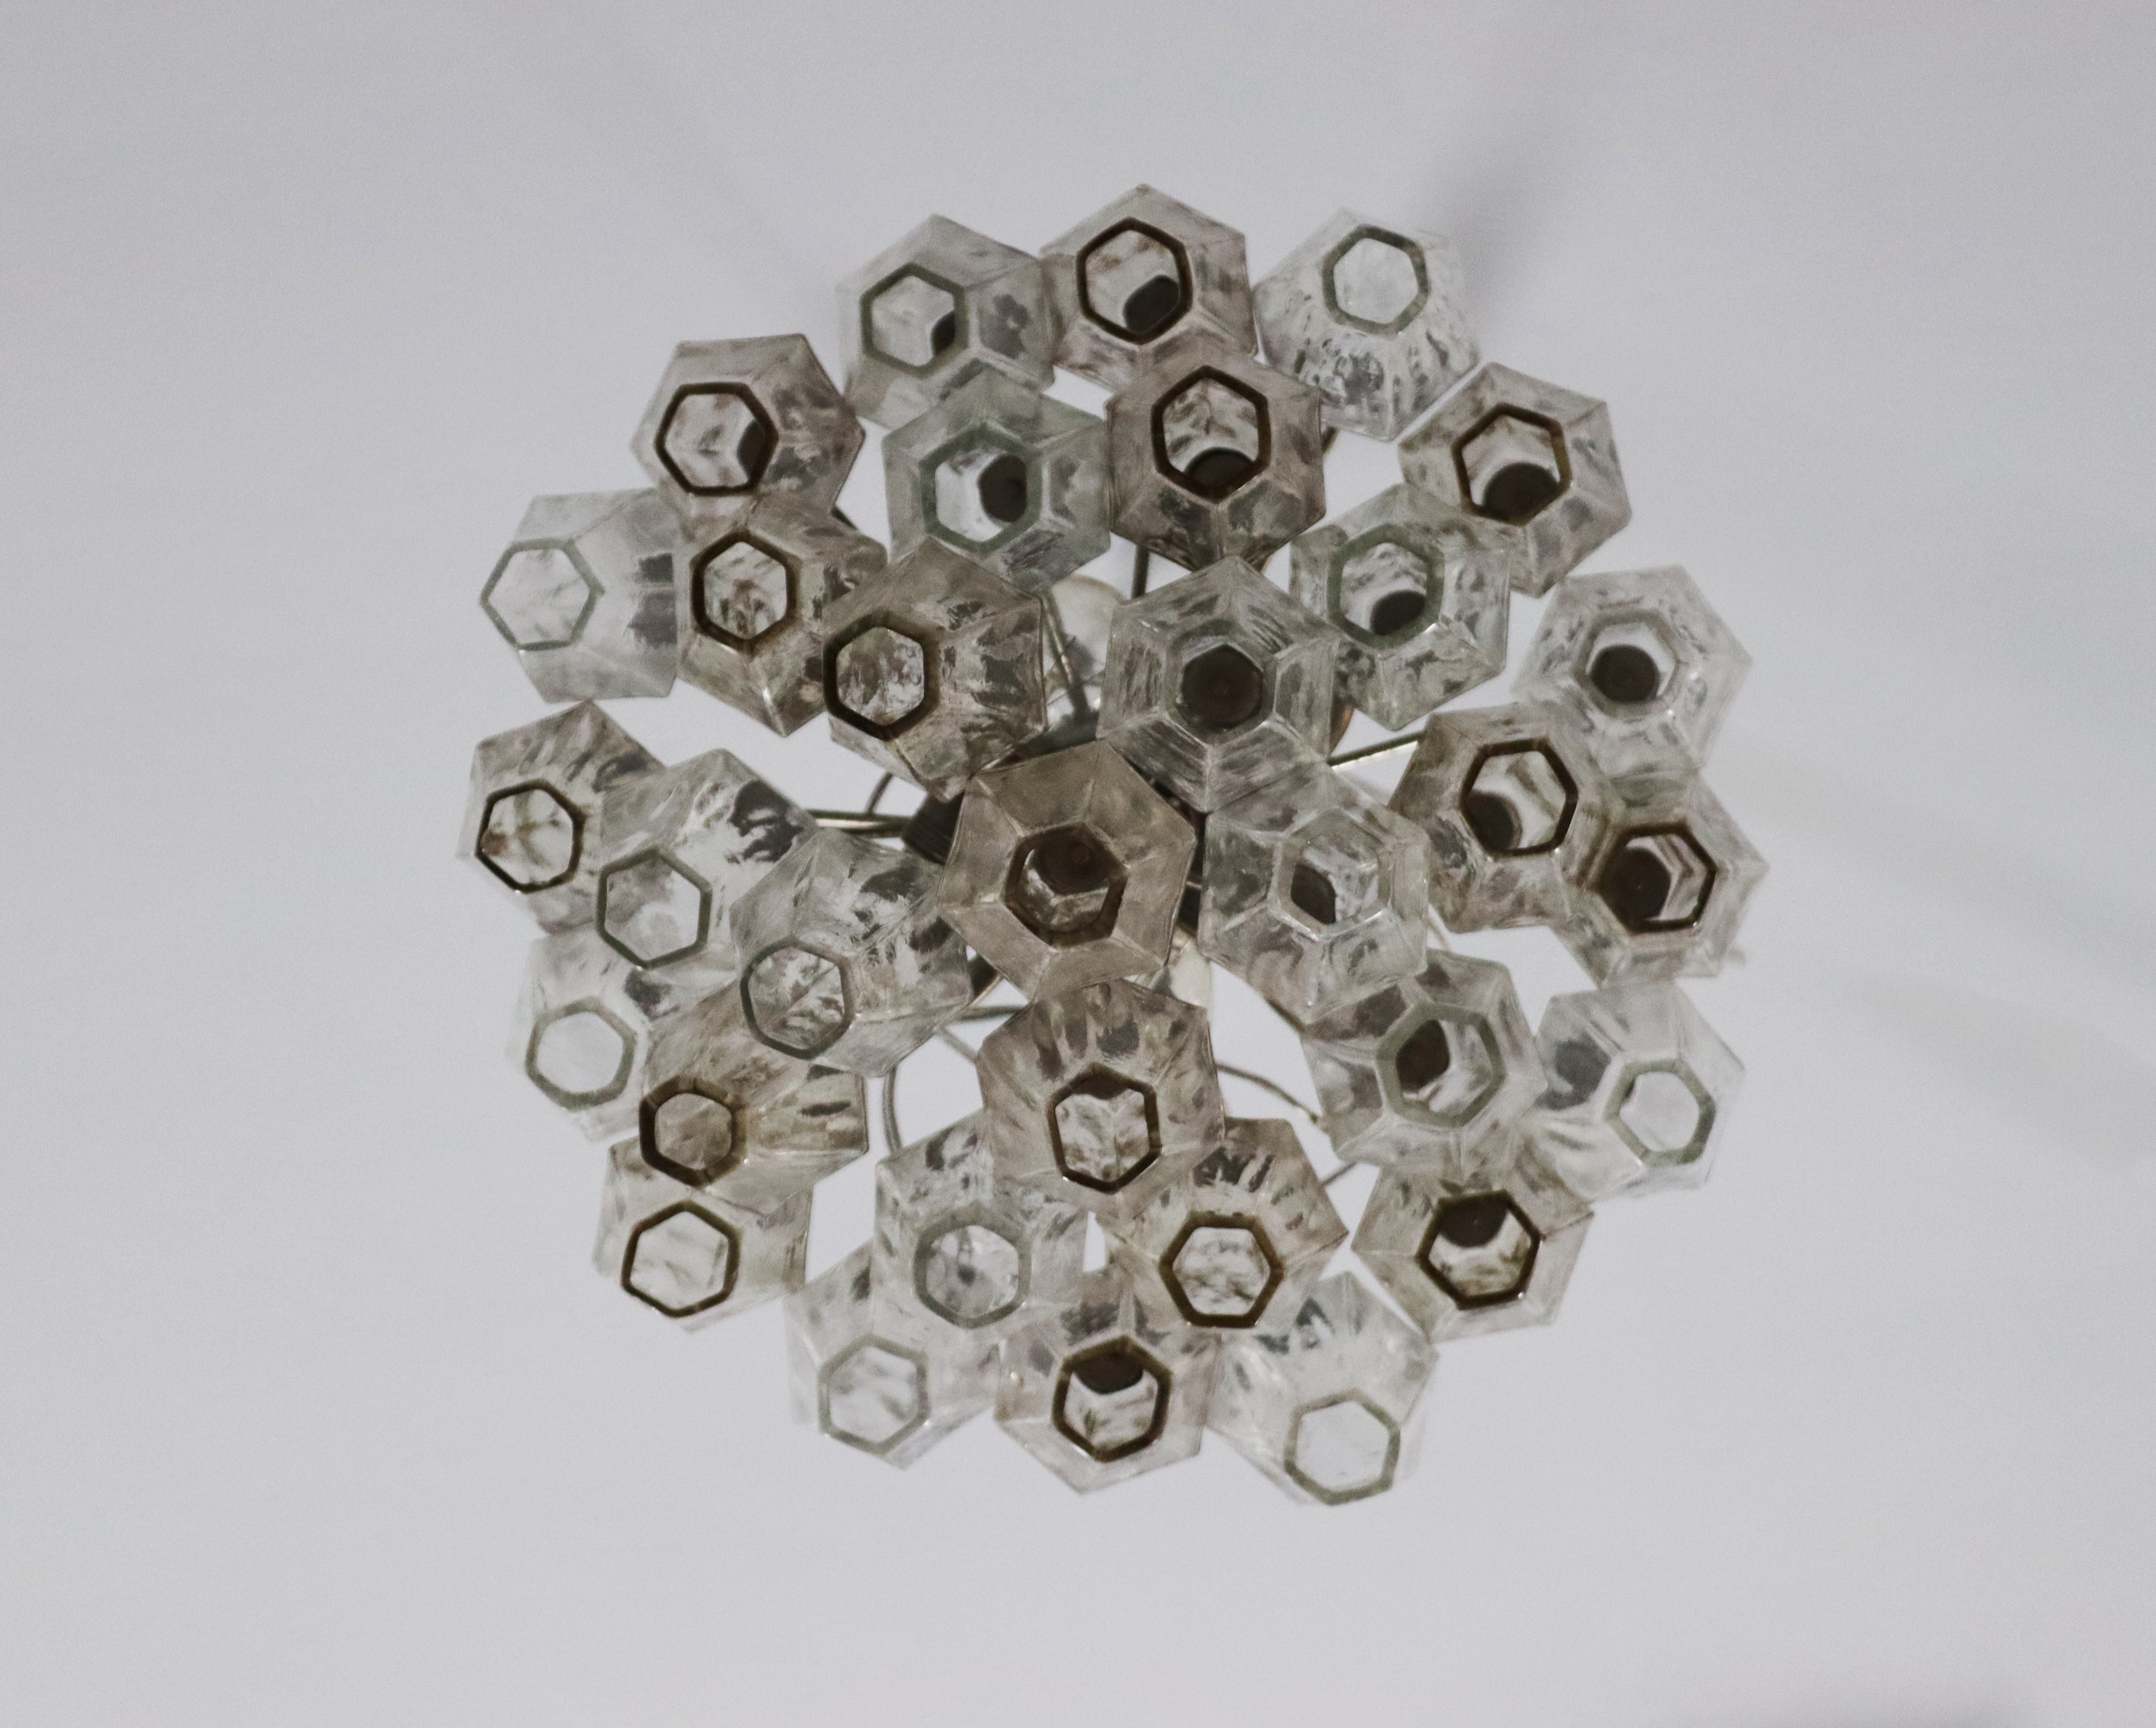 CARLO SCARPA for VENINI. Poliedri chandelier - Image 3 of 3